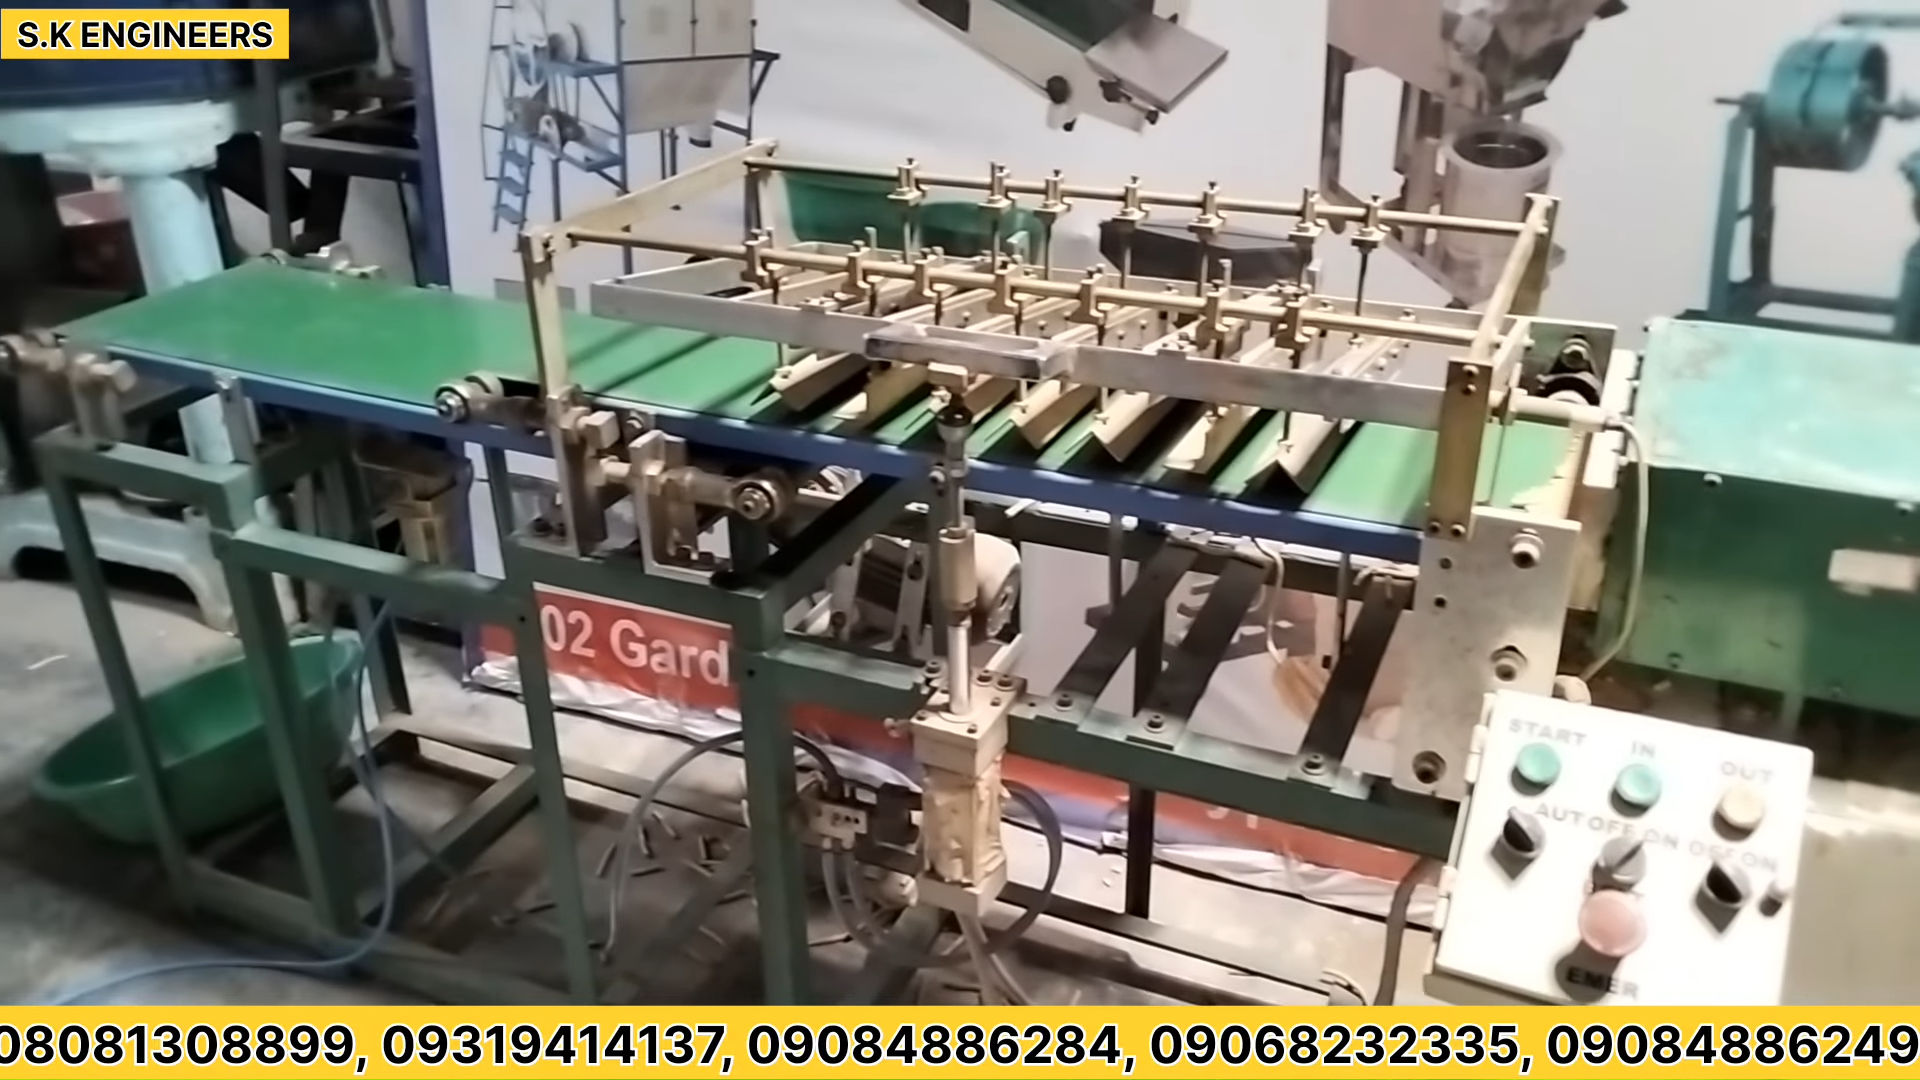 Low Price Dhoop batti Making Machine